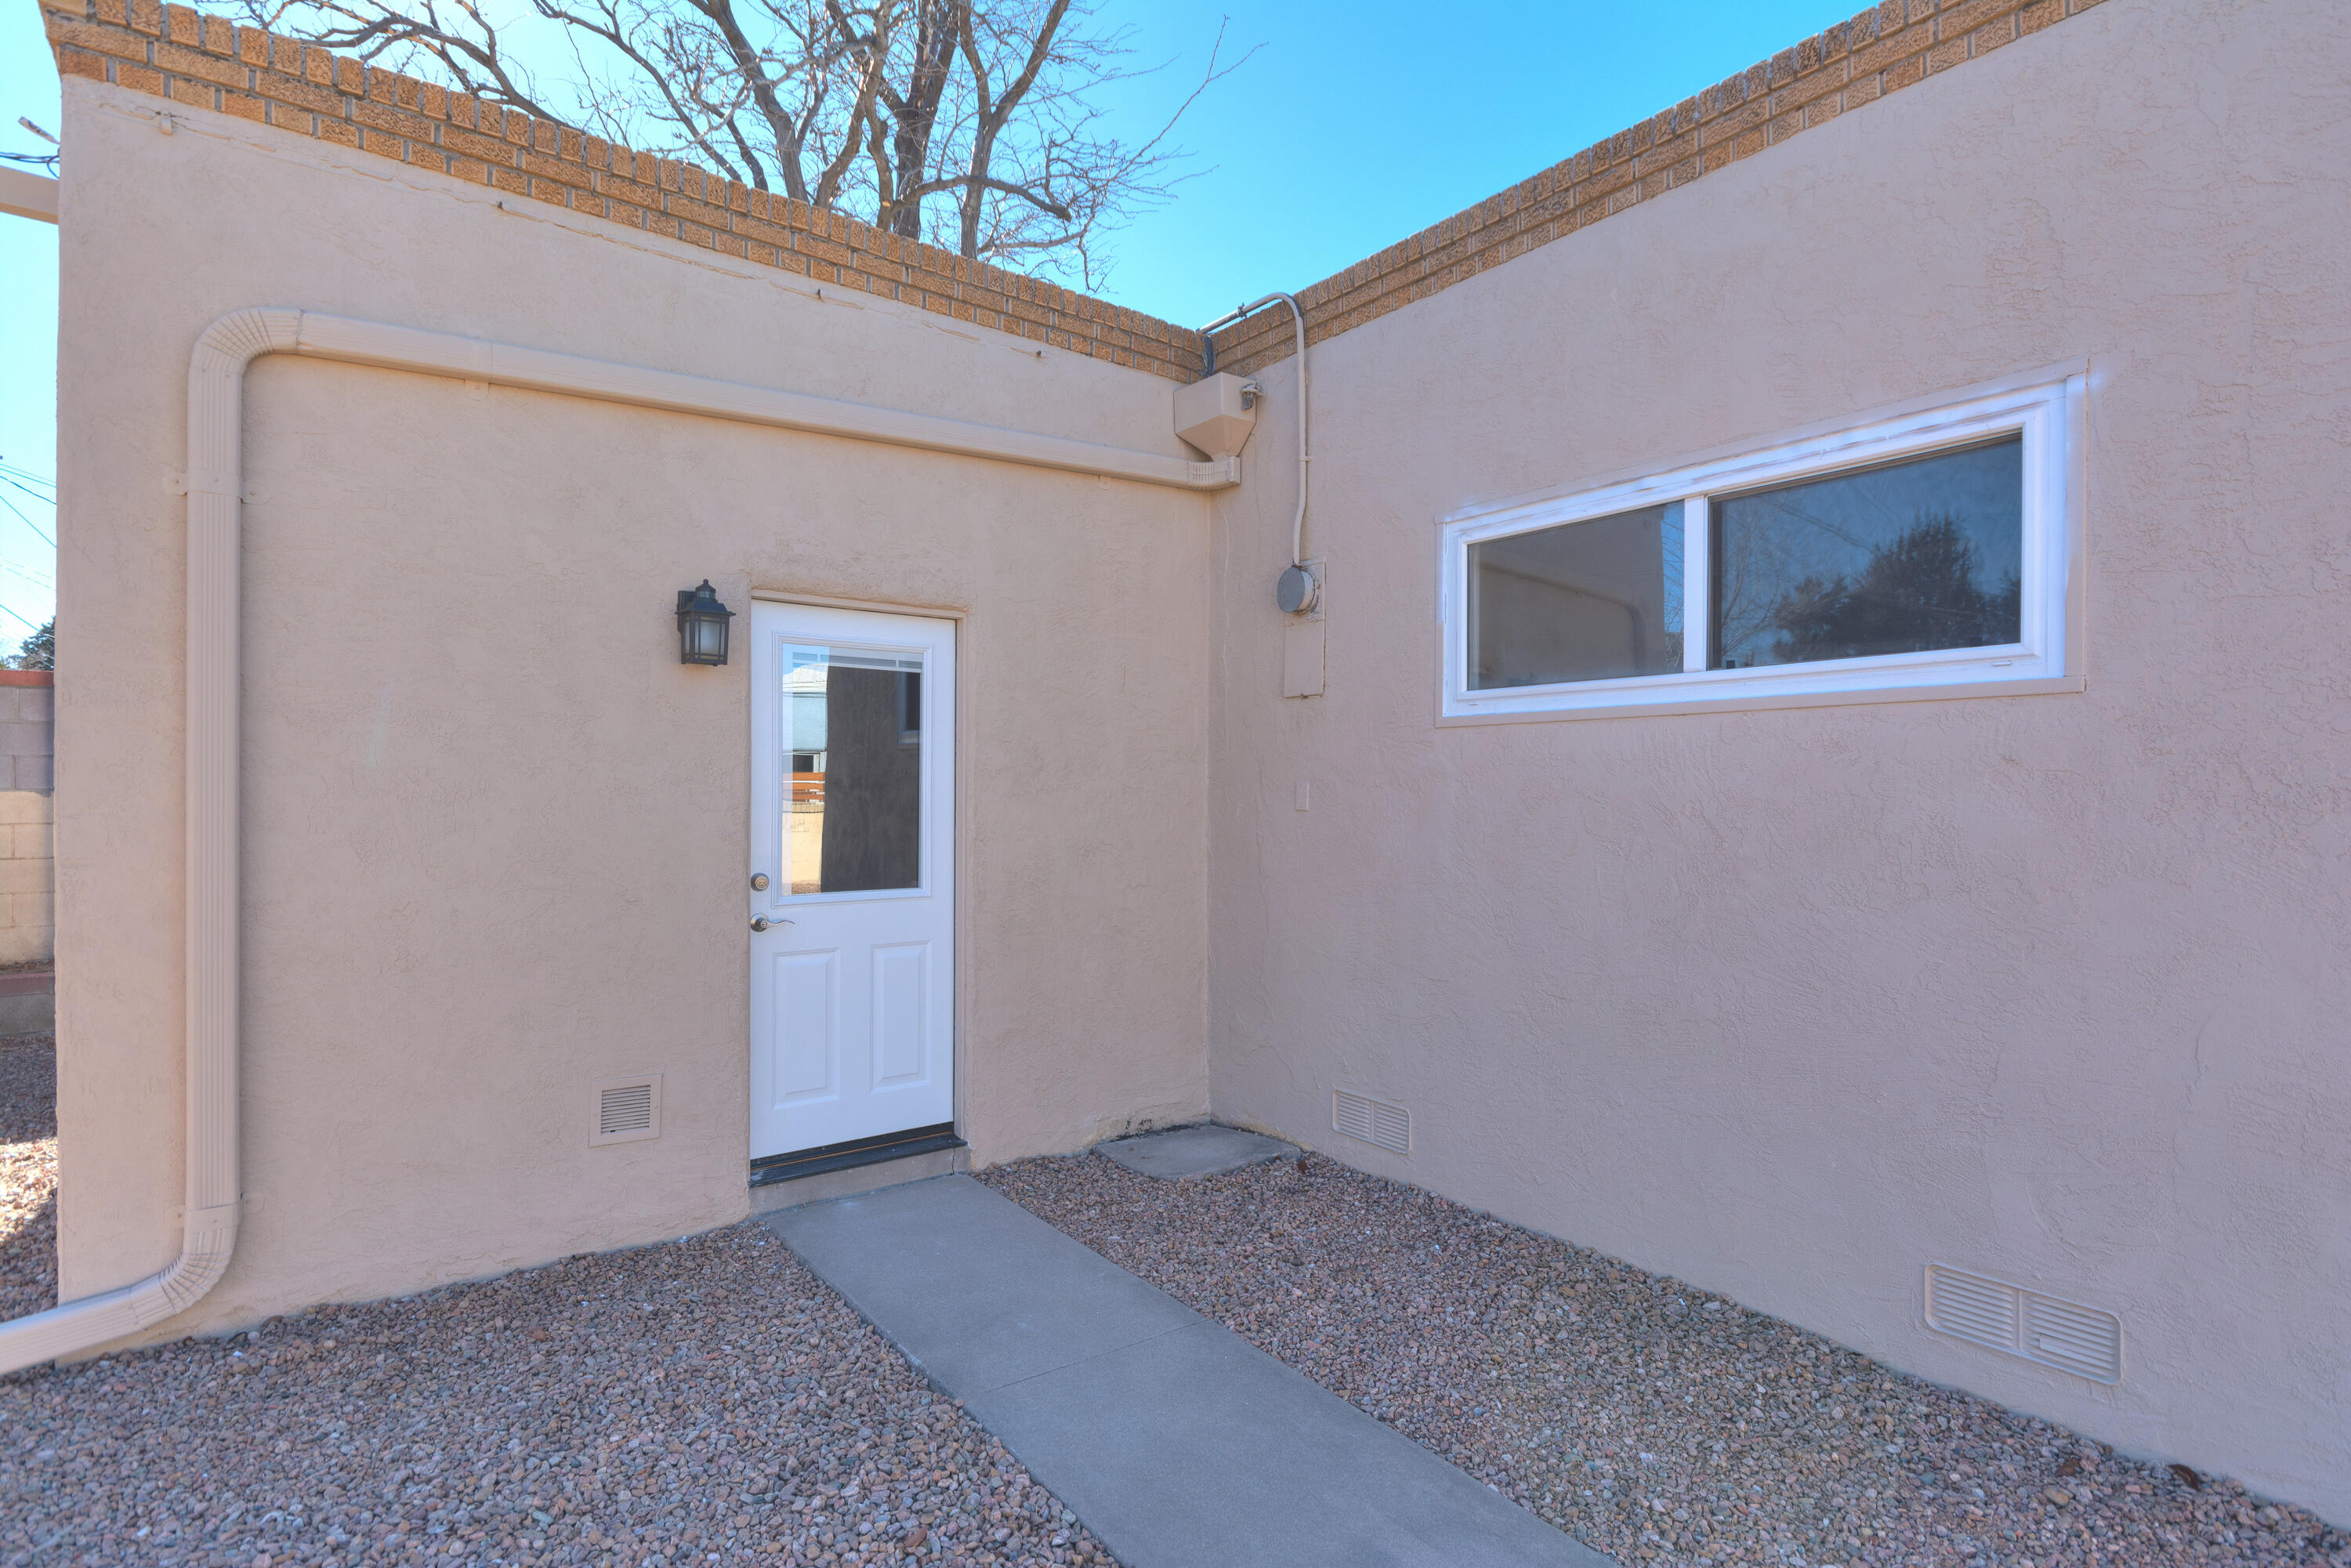 932 Manzano Street NE, Albuquerque, New Mexico 87110, 3 Bedrooms Bedrooms, ,2 BathroomsBathrooms,Residential,For Sale,932 Manzano Street NE,1055545